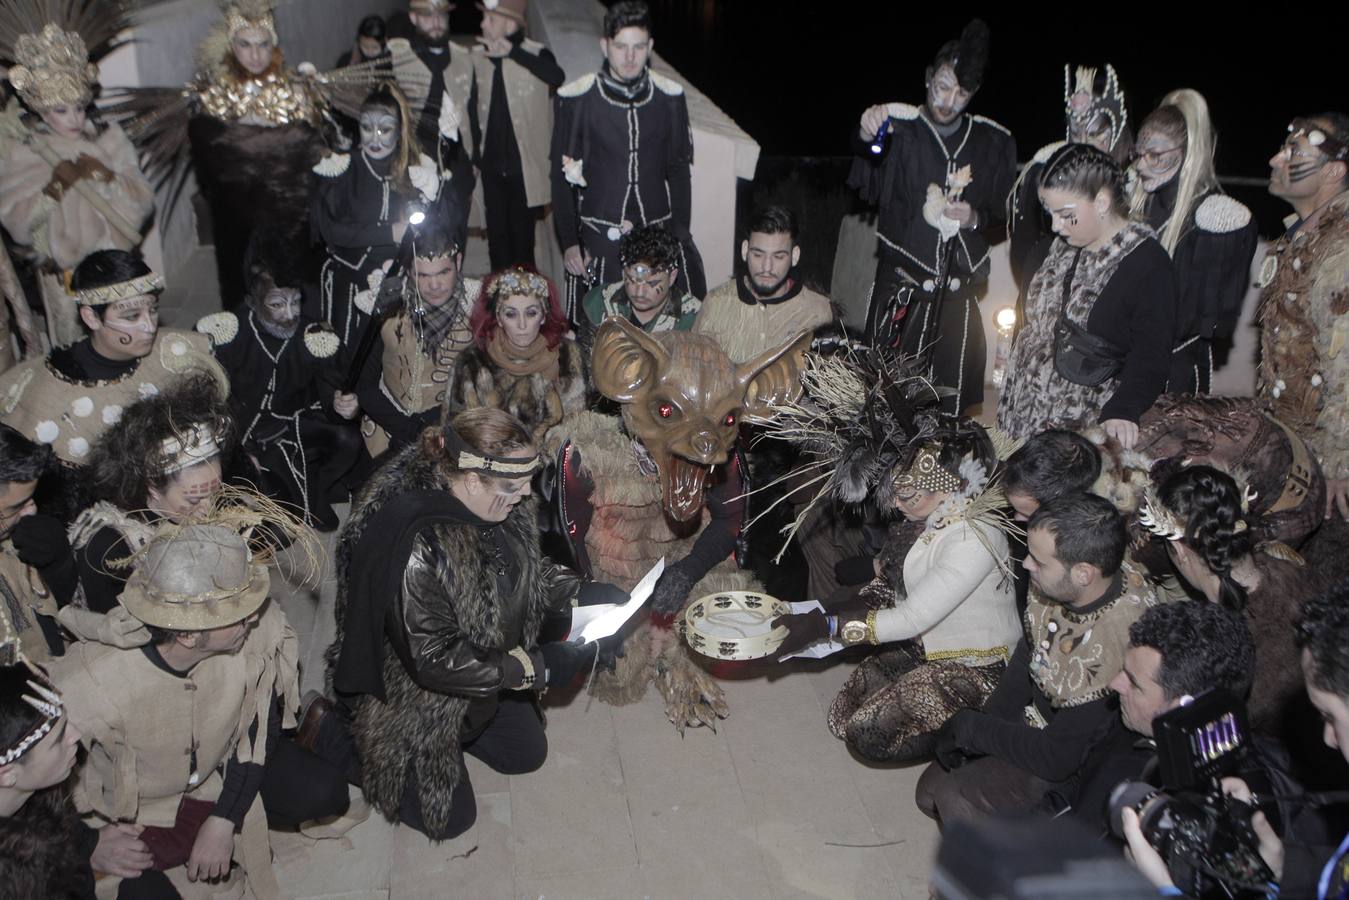 José Antonio Patrón encarnó a la bestia con un traje que simulaba un murciélago y asustó a todo el público con un séquito de 60 samuráis